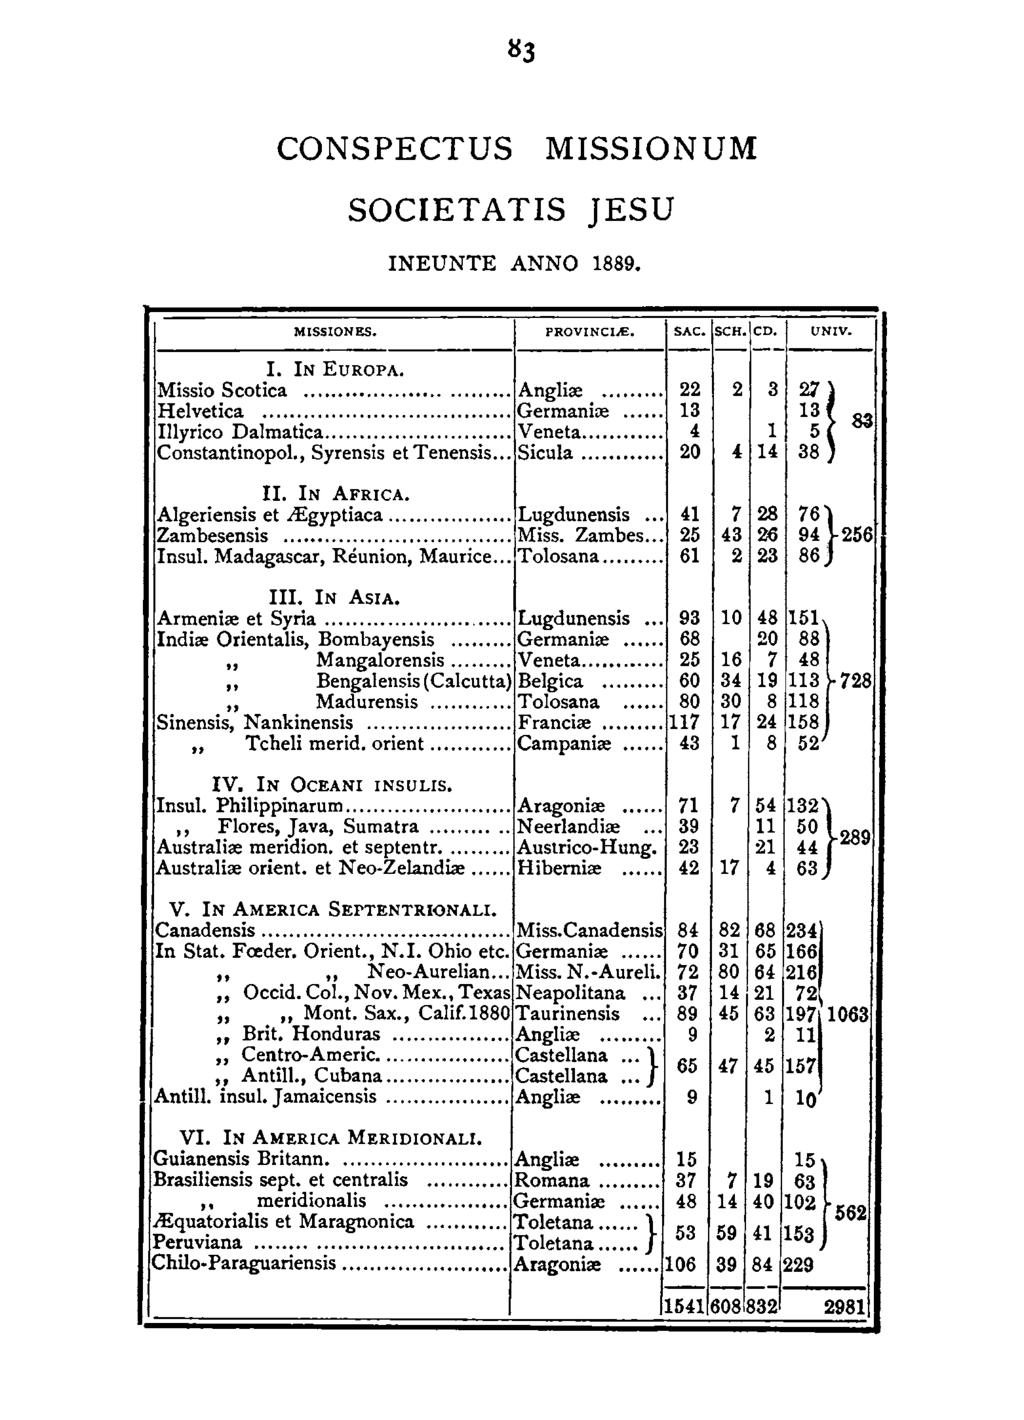 CONSPECTUS MISSIONUM SOCIETATIS JESU INEUNTE ANNO 1889. MISSIONES. PROVINCJ..E, SAC. SCH. CD. UNJV, 1---------------1------1-----1---1 l. IN EUROPA. Missio Scotica... Anglire... 22 Helvetica.